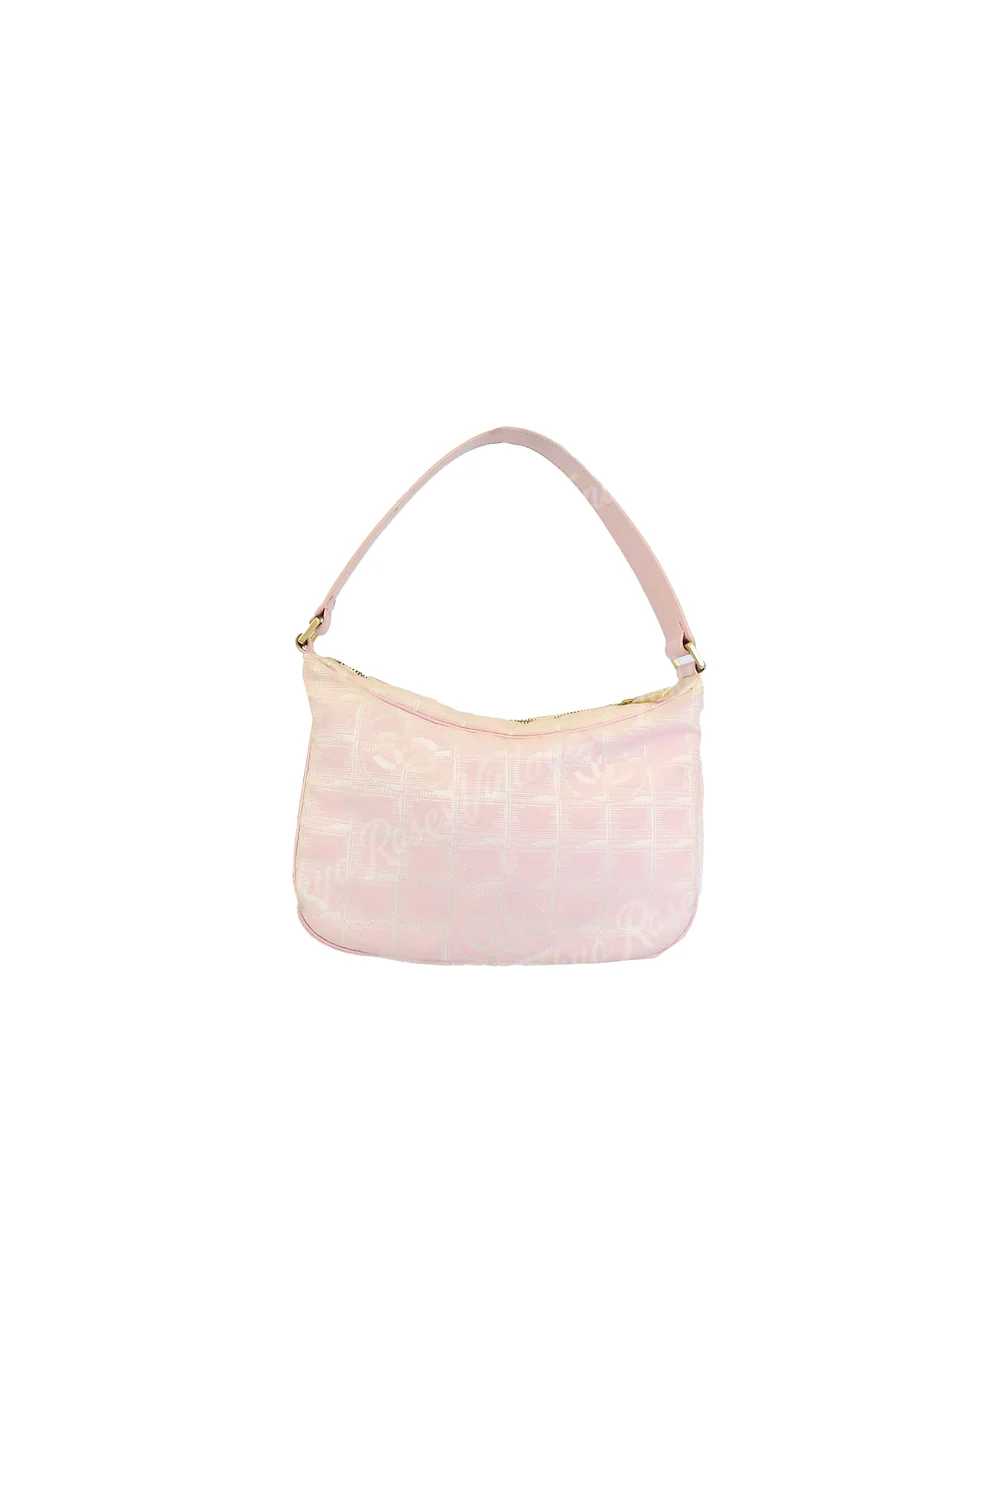 Chanel Travel Line Pink Mini Bag Handbag - image 2